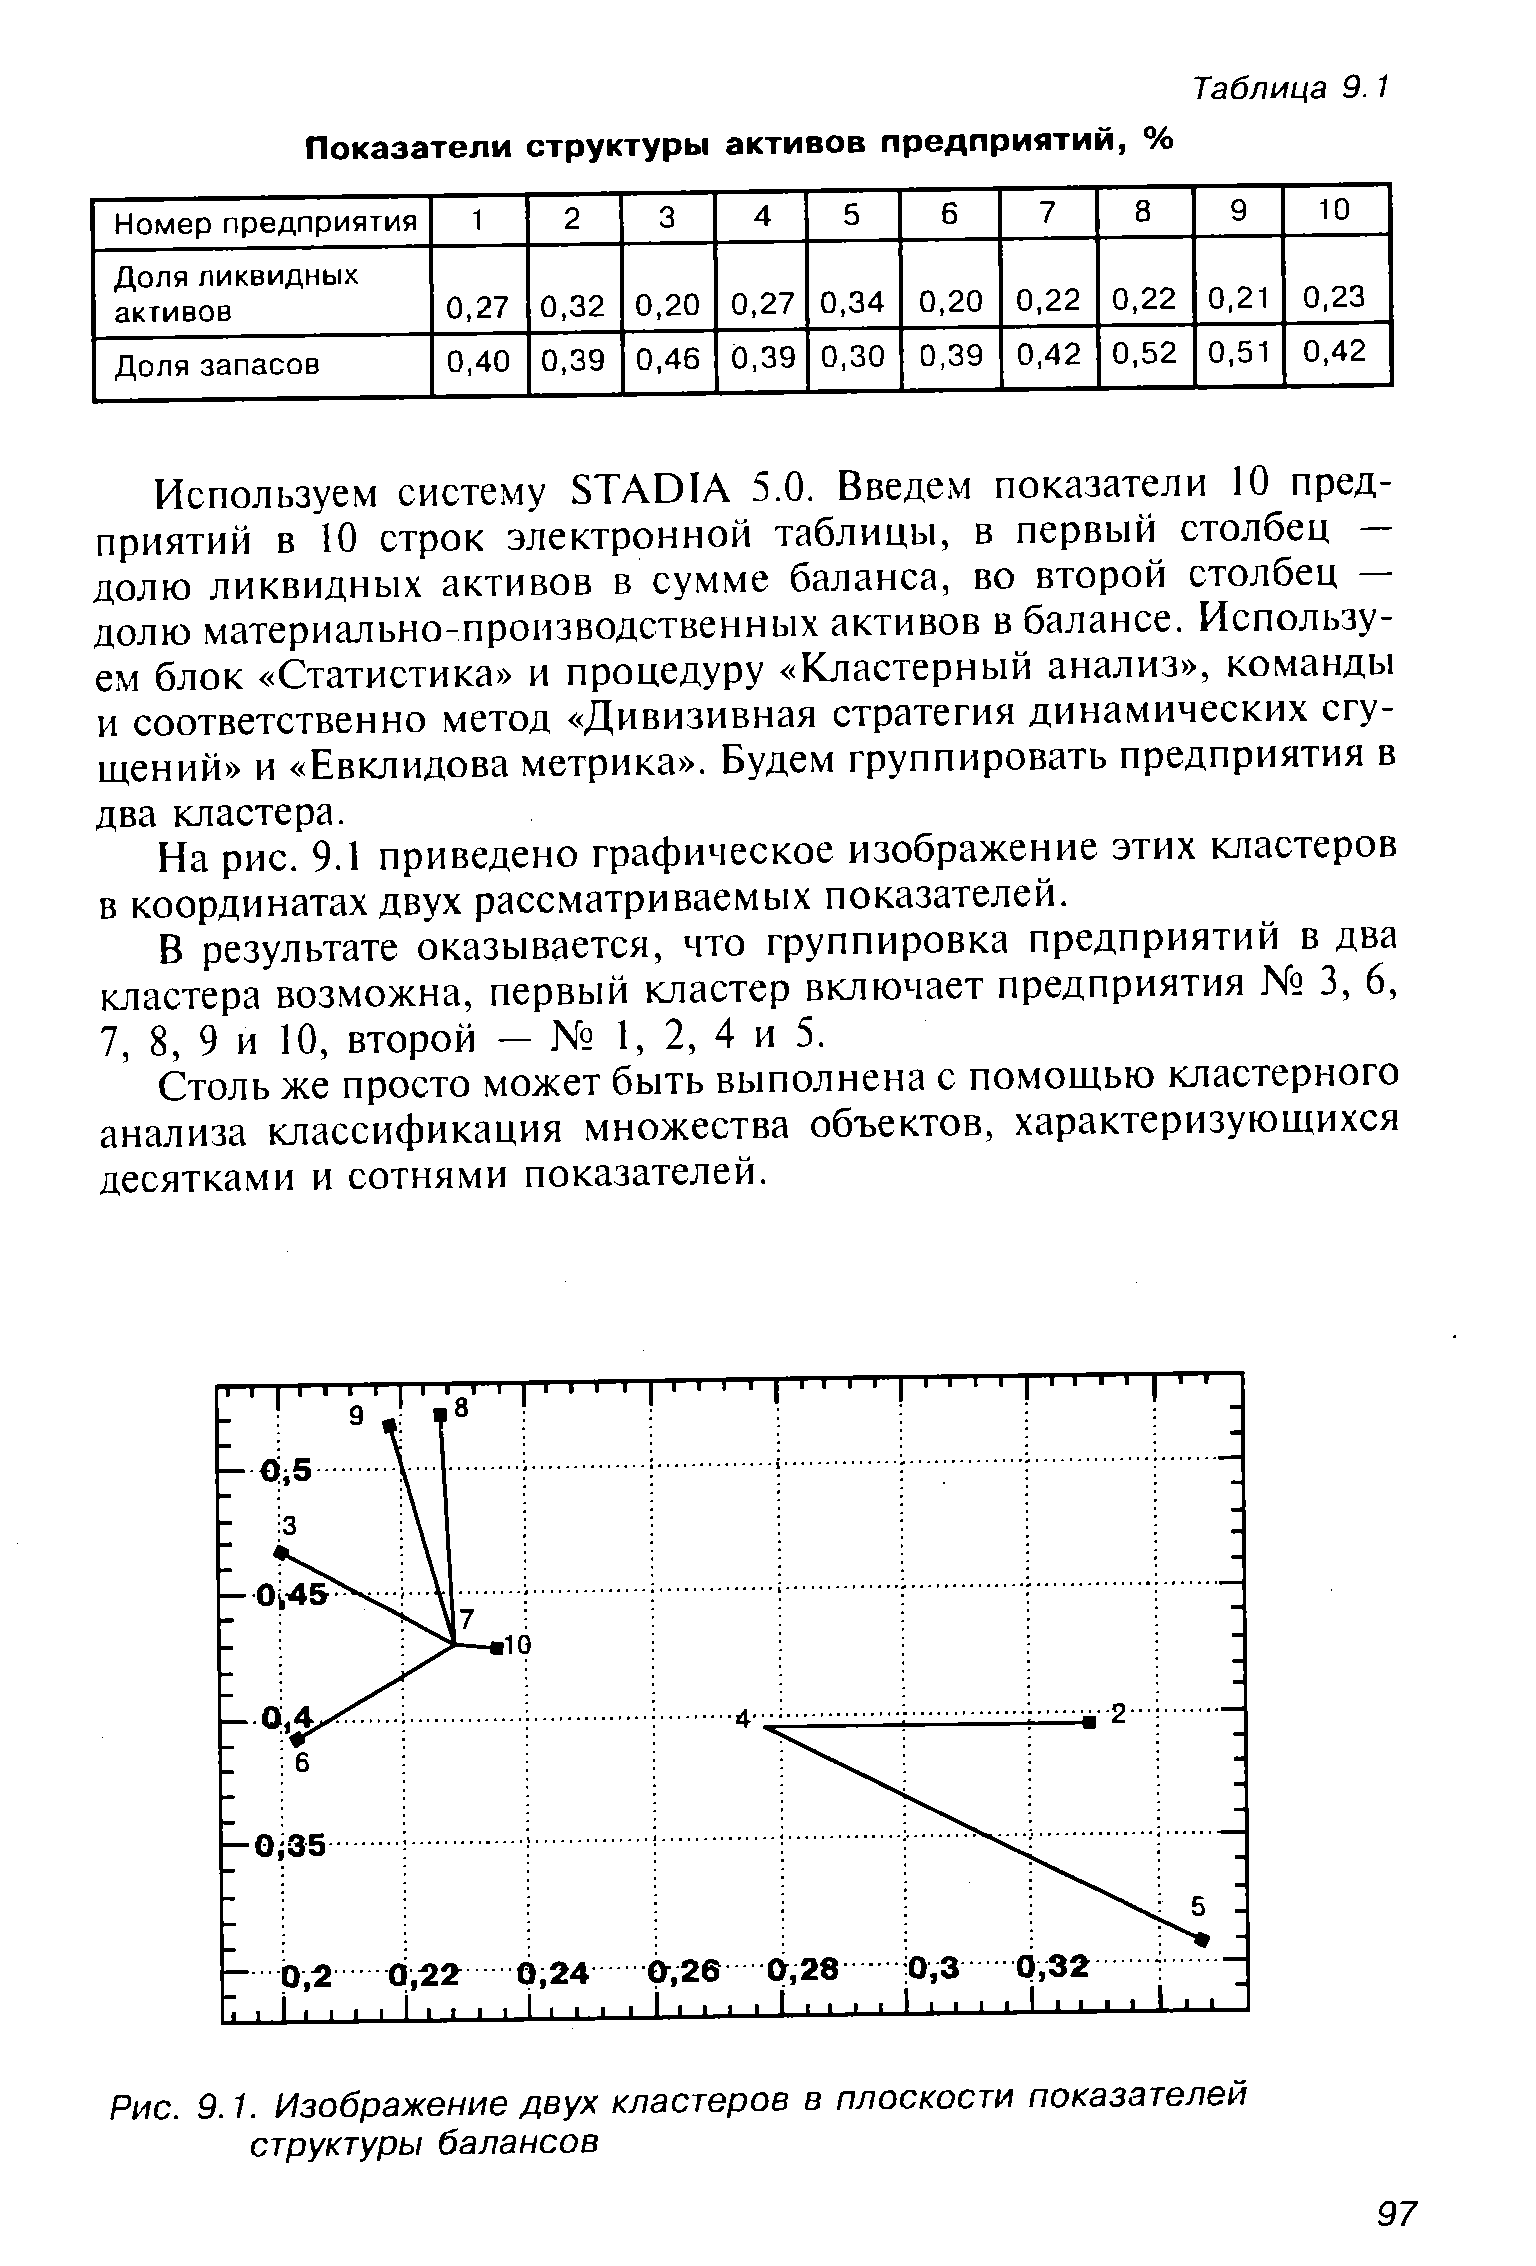 Рис. 9.1. Изображение двух кластеров в плоскости показателей структуры балансов
